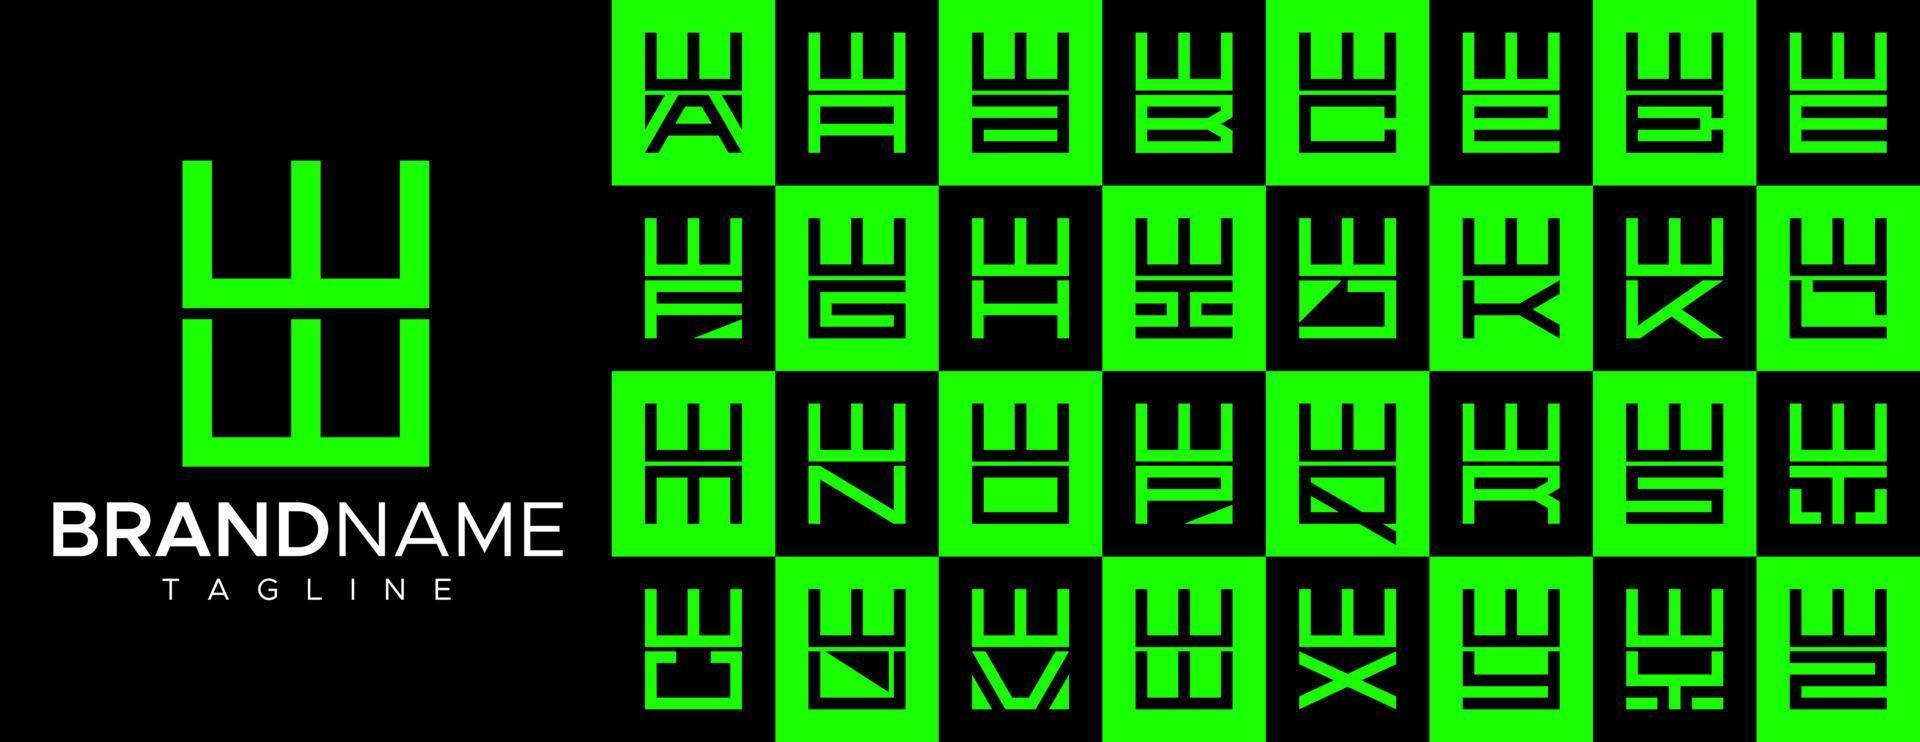 Facile carré lettre w ww logo conception ensemble. moderne boîte initiale w logo l'image de marque. vecteur